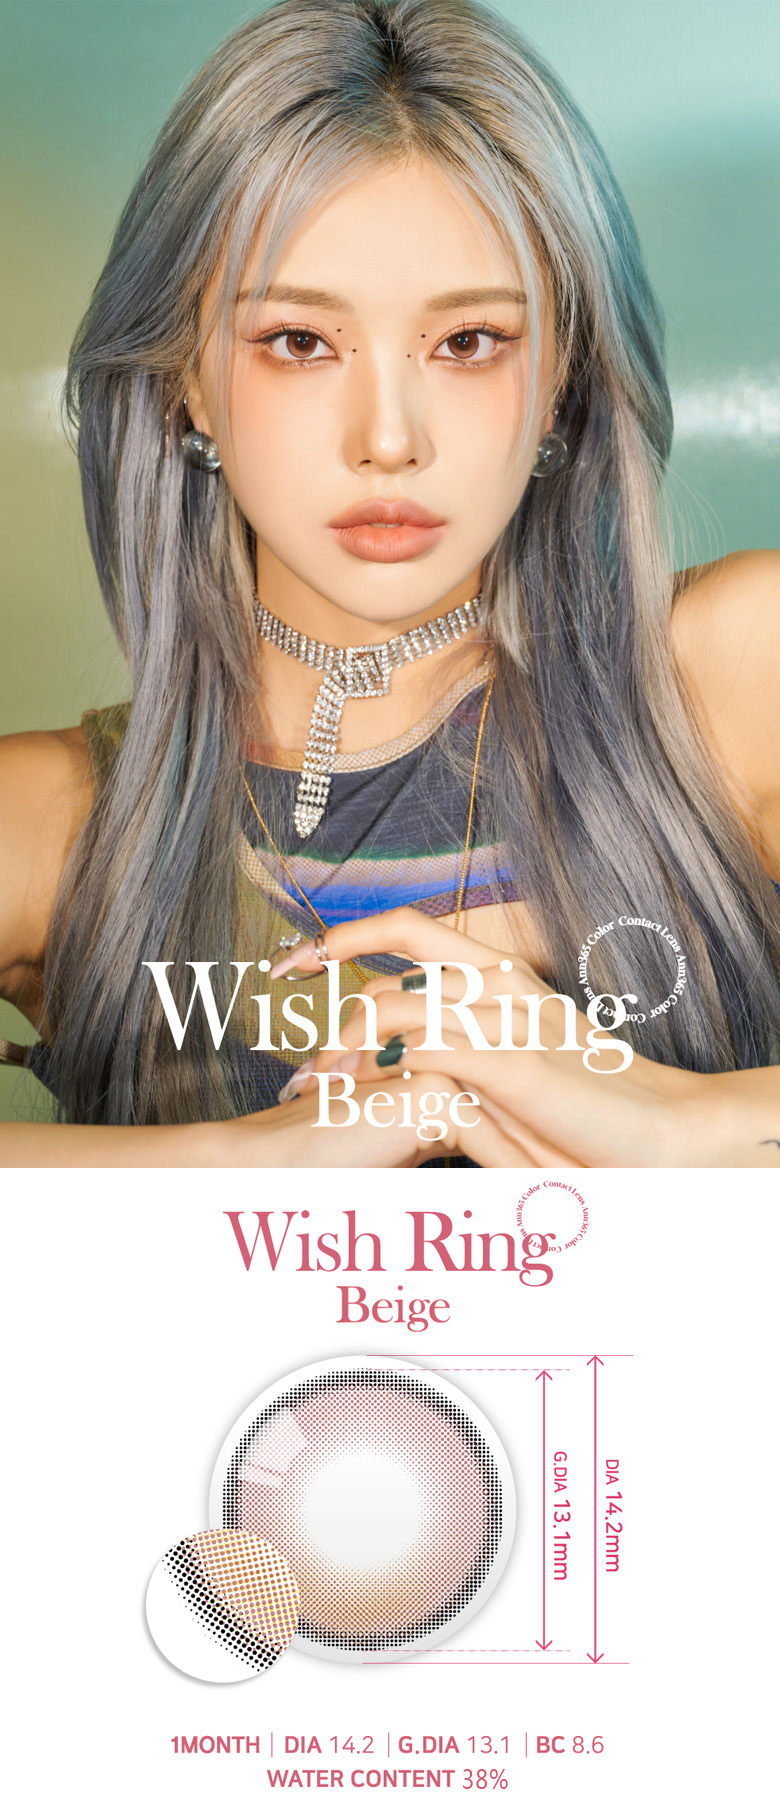 [1 Month/ベージュ/BEIGE] ウィッシュ リング - 1ヶ月 - Wish Ring - 1 Month (2pcs) [14.2mm]